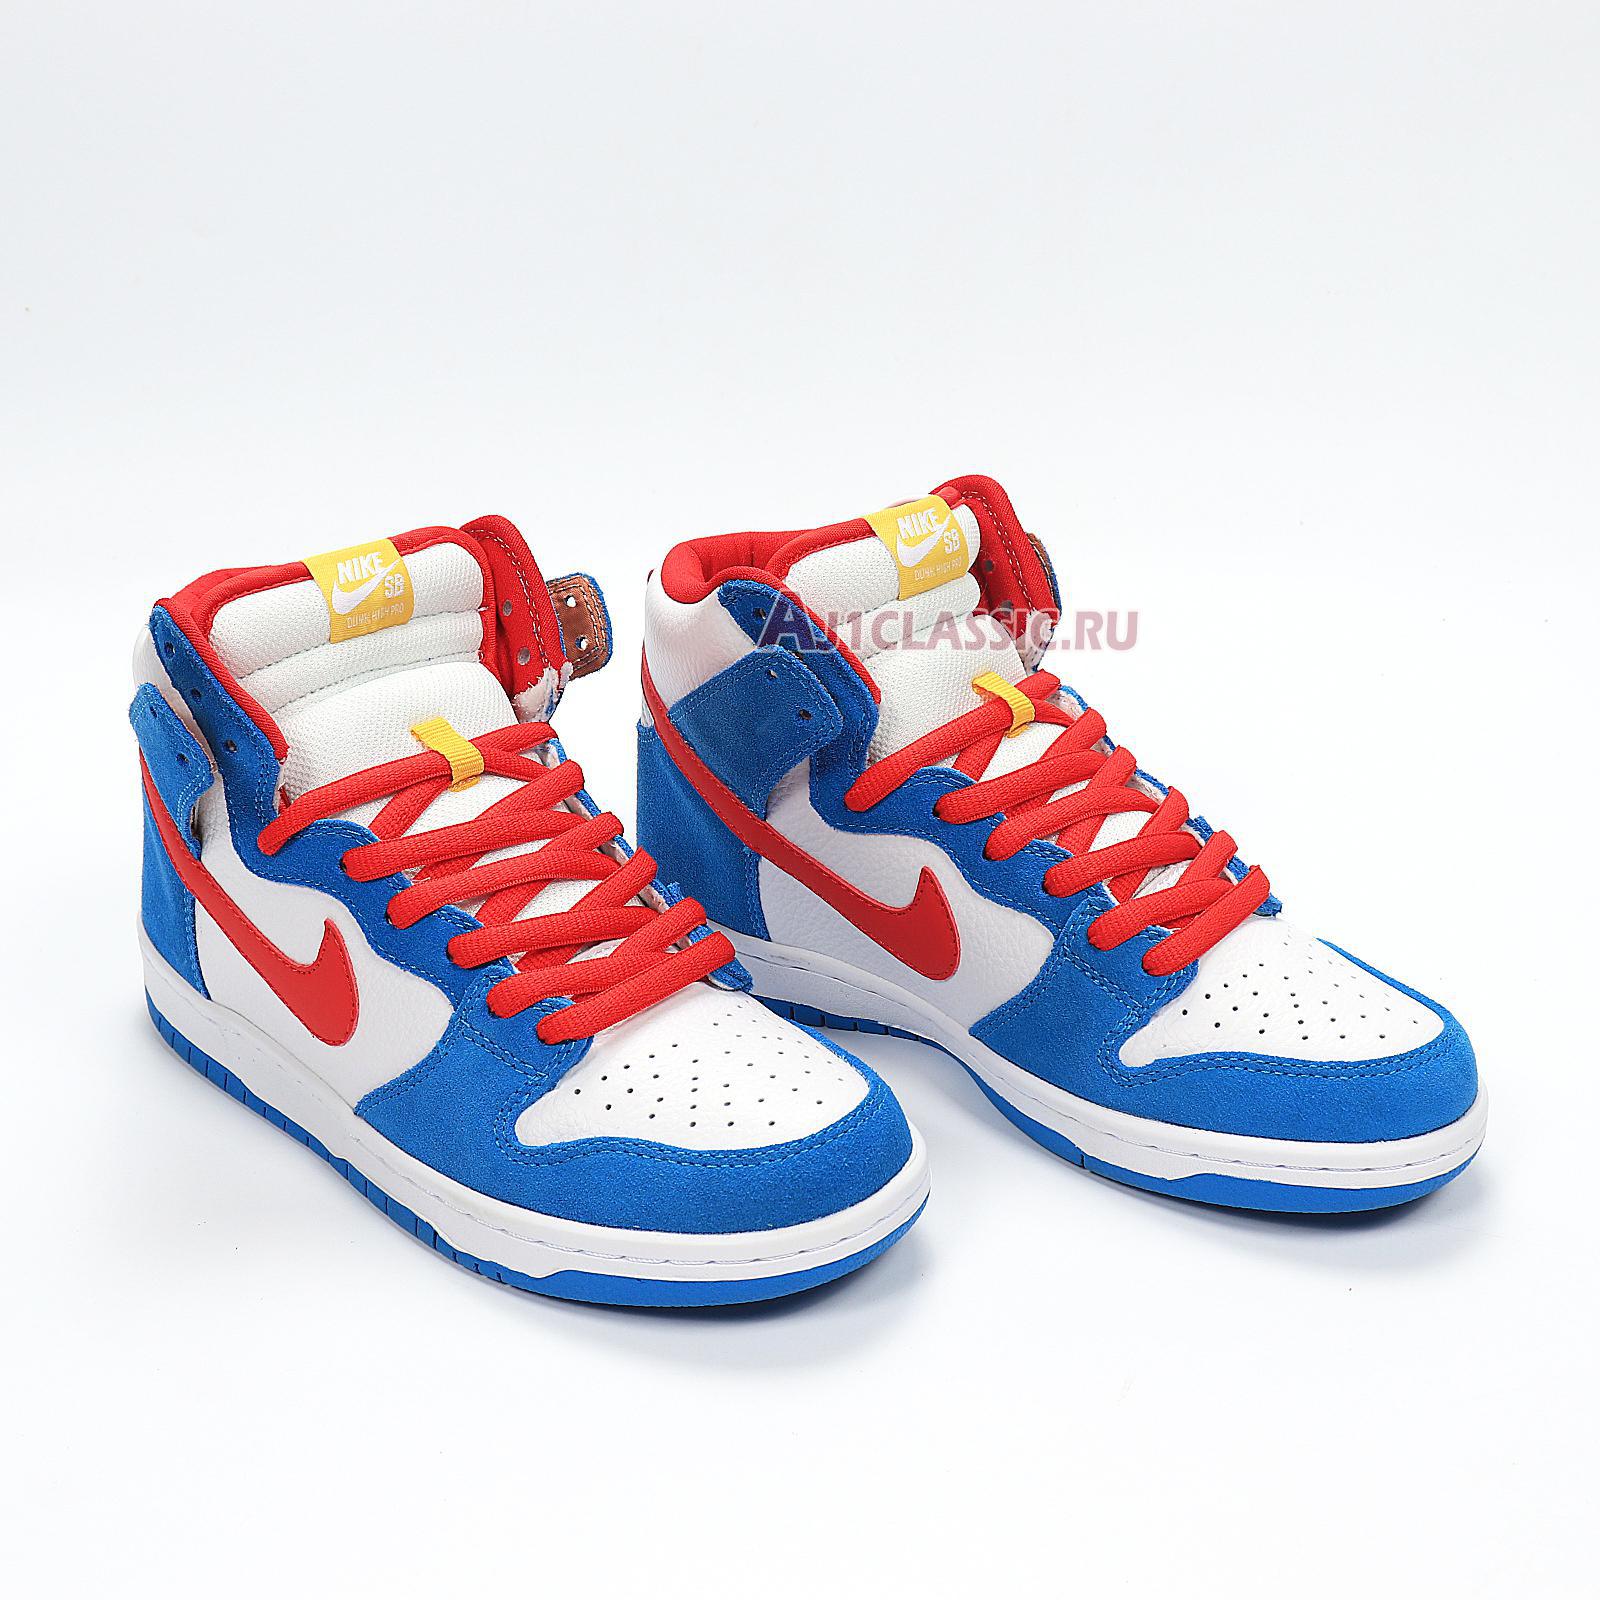 Nike Dunk High SB "Doraemon" CI2692-400